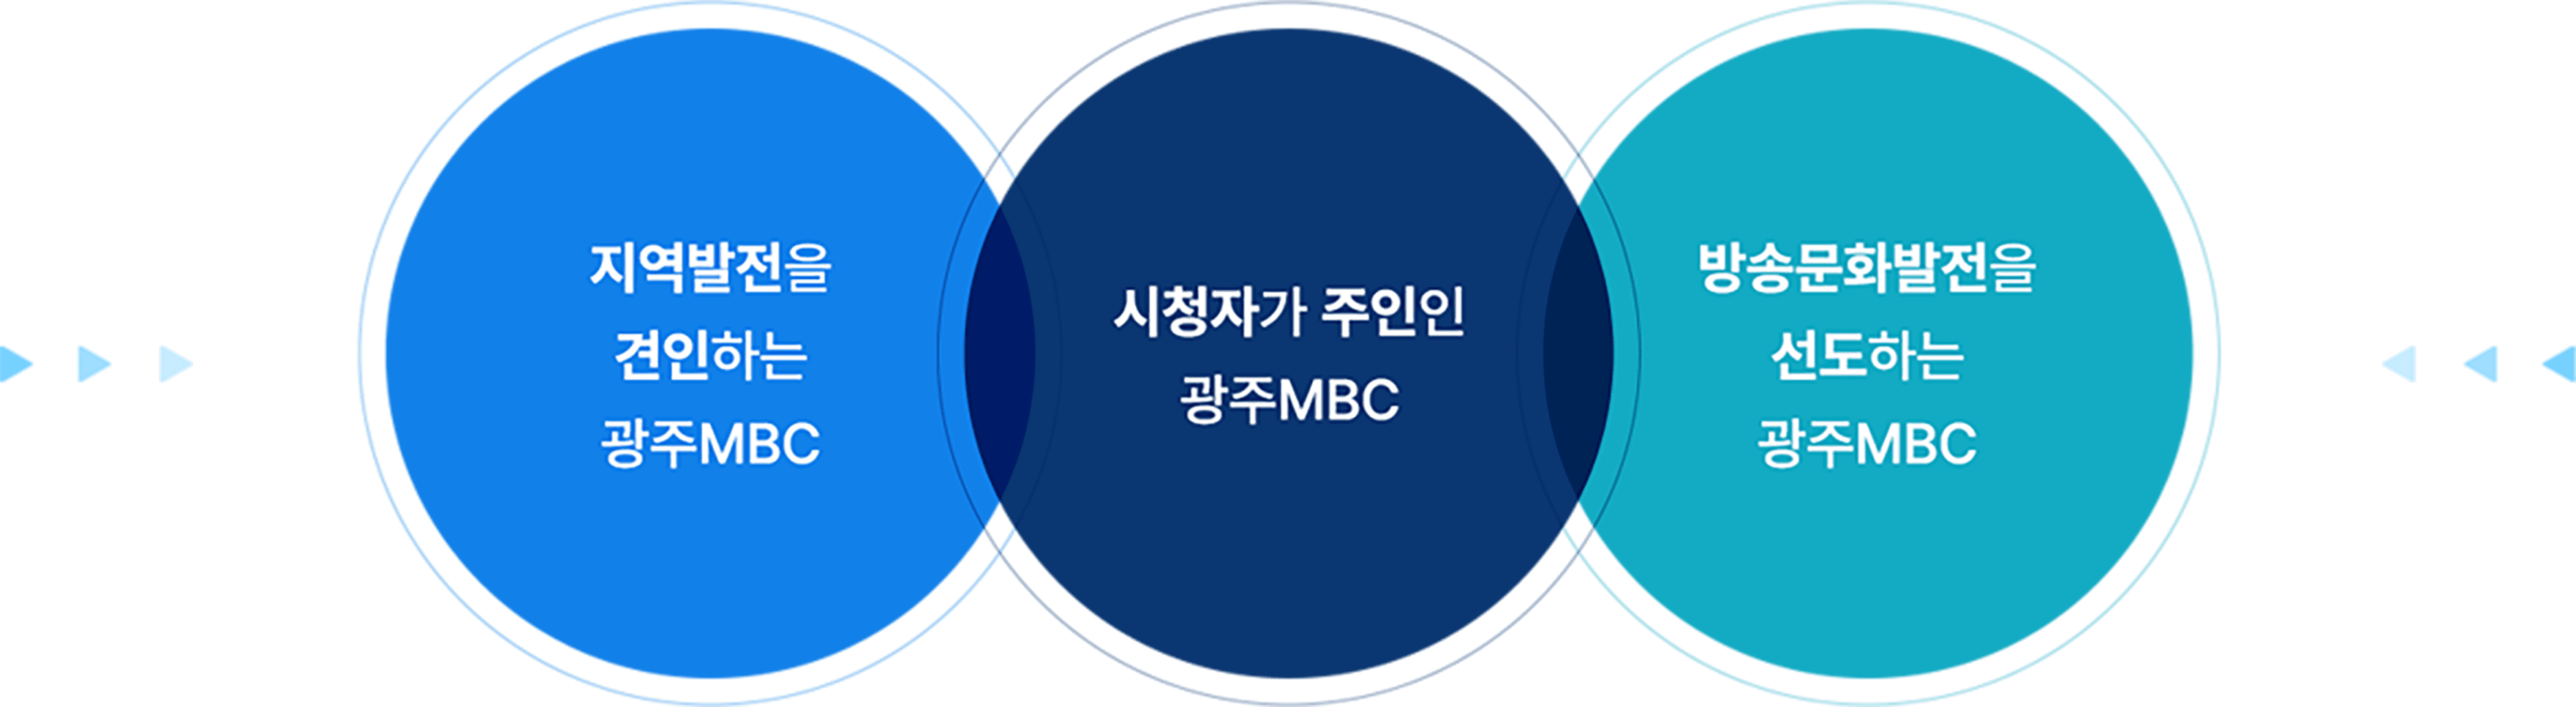 지역발전을 견인하는 광주MBC, 시청자가 주인인 광주MBC, 방송문화발전을 선도하는 광주MBC